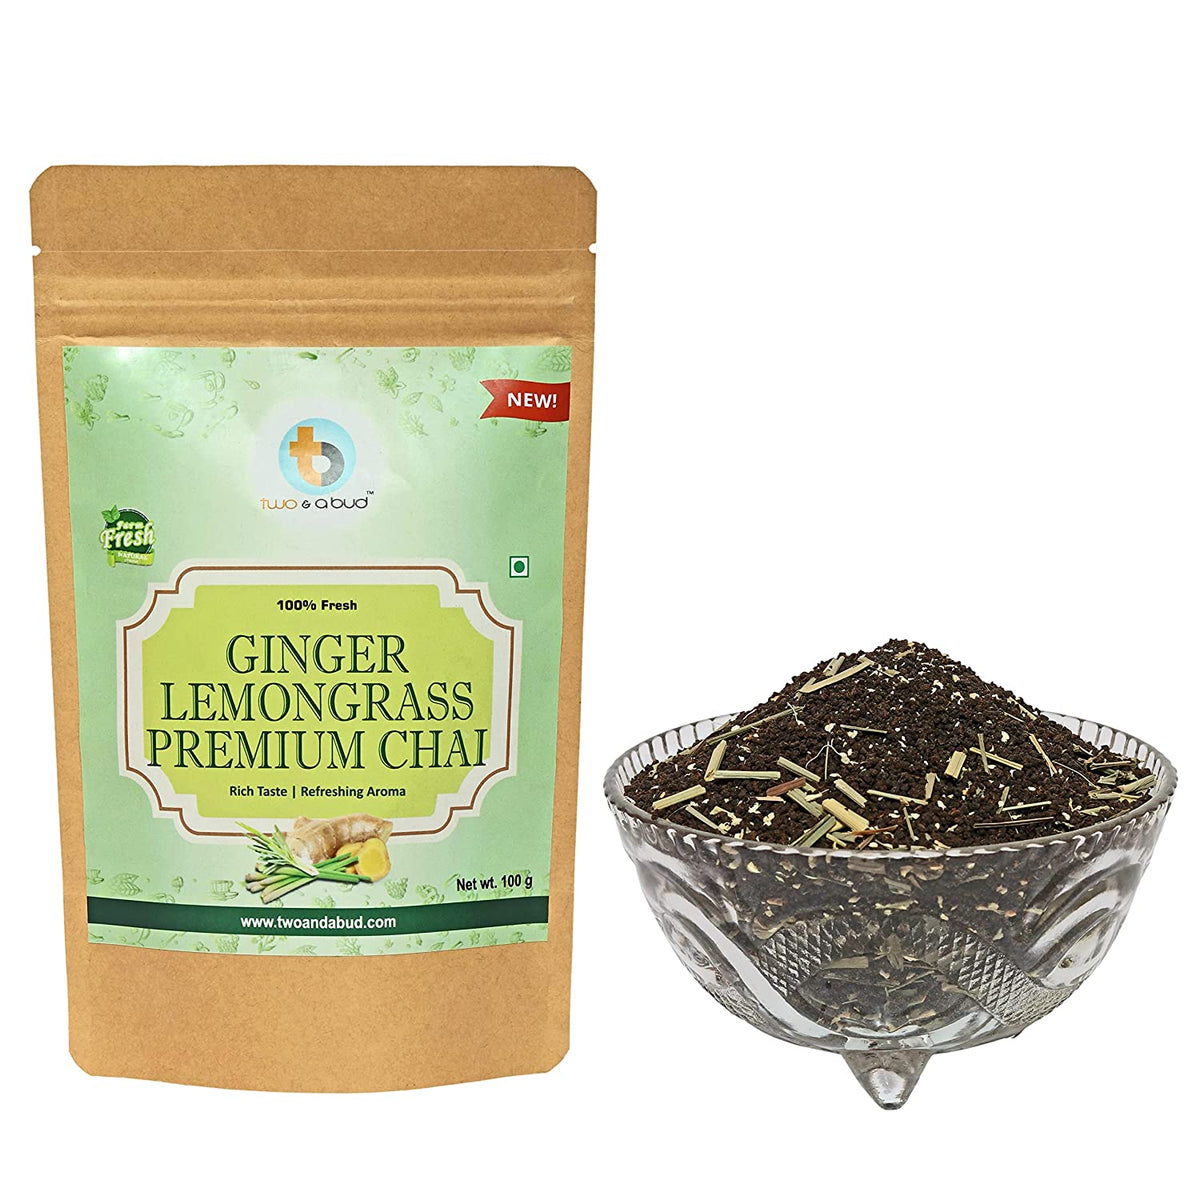 Ginger Lemongrass Premium Chai (250g)